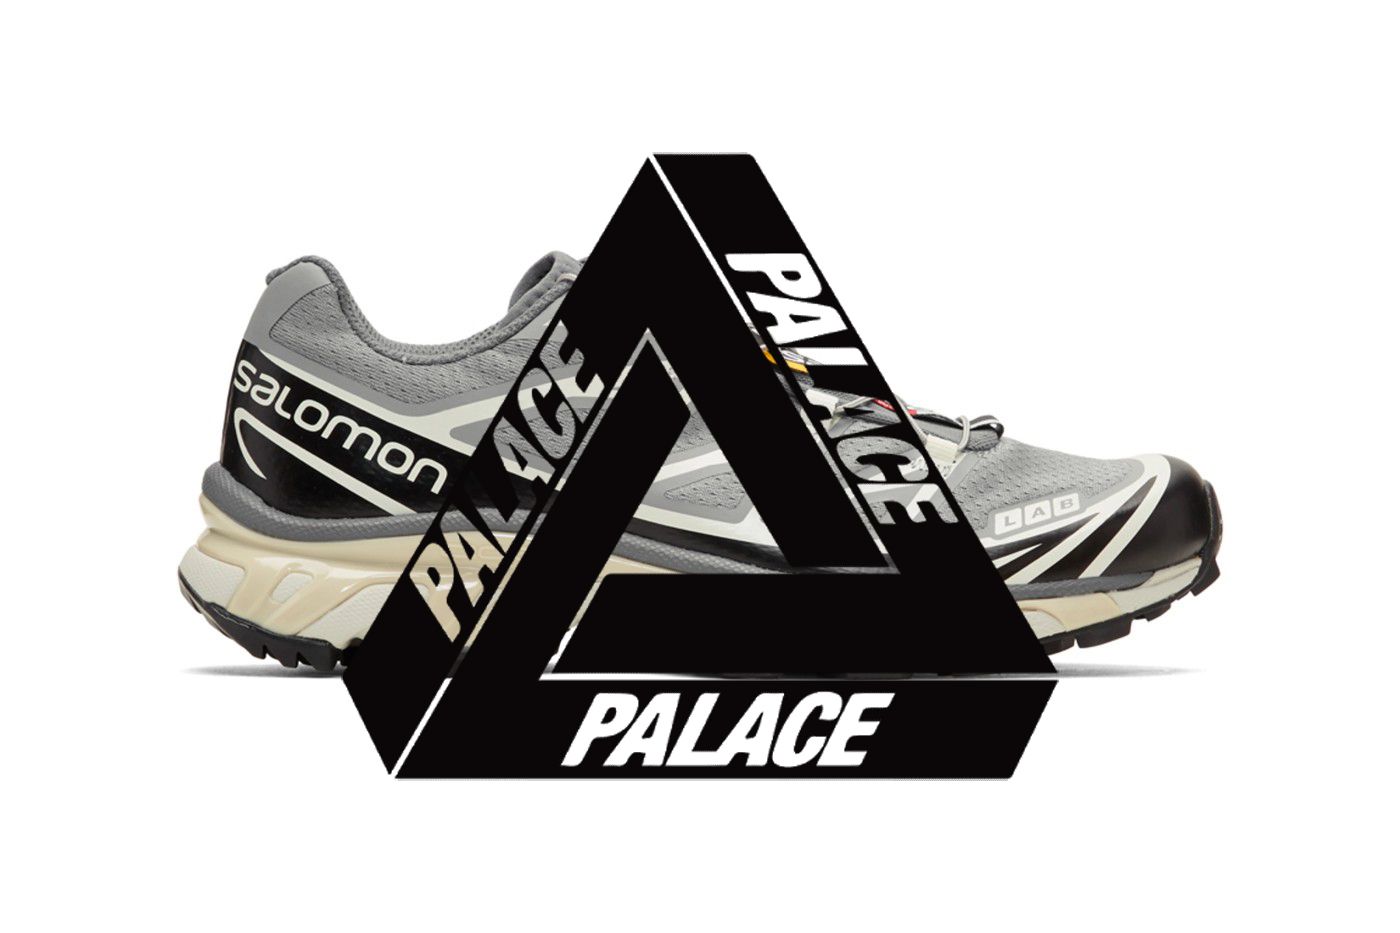 palace salomon shoes